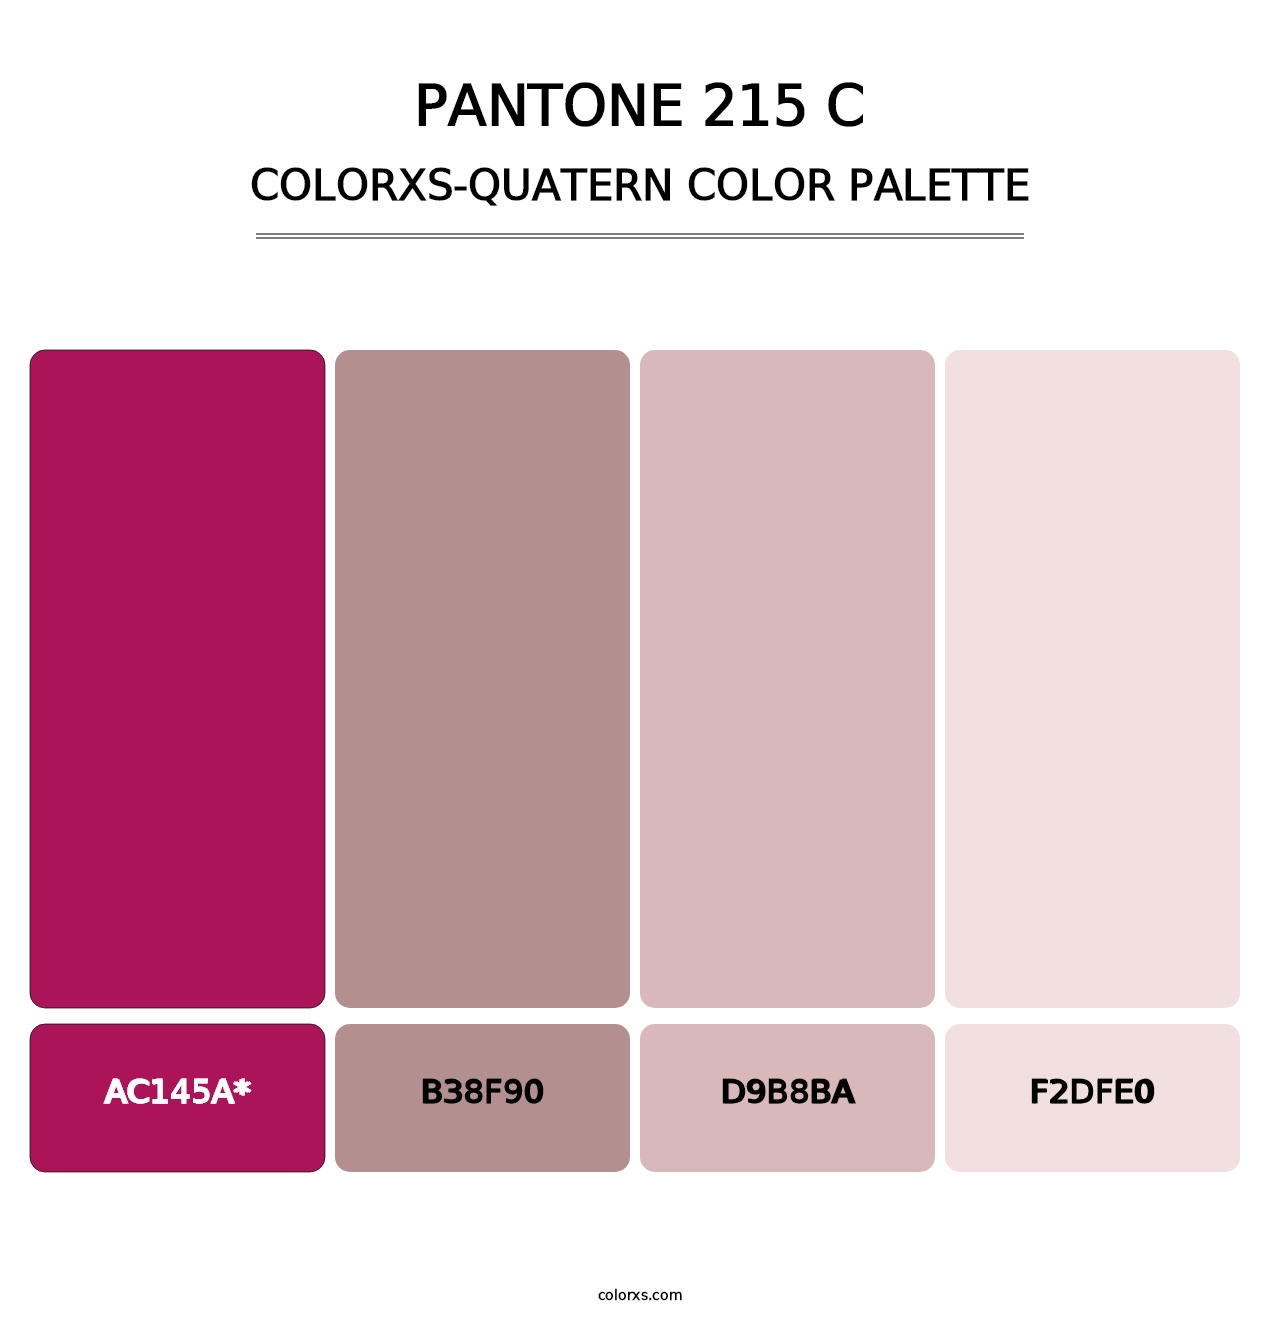 PANTONE 215 C - Colorxs Quatern Palette